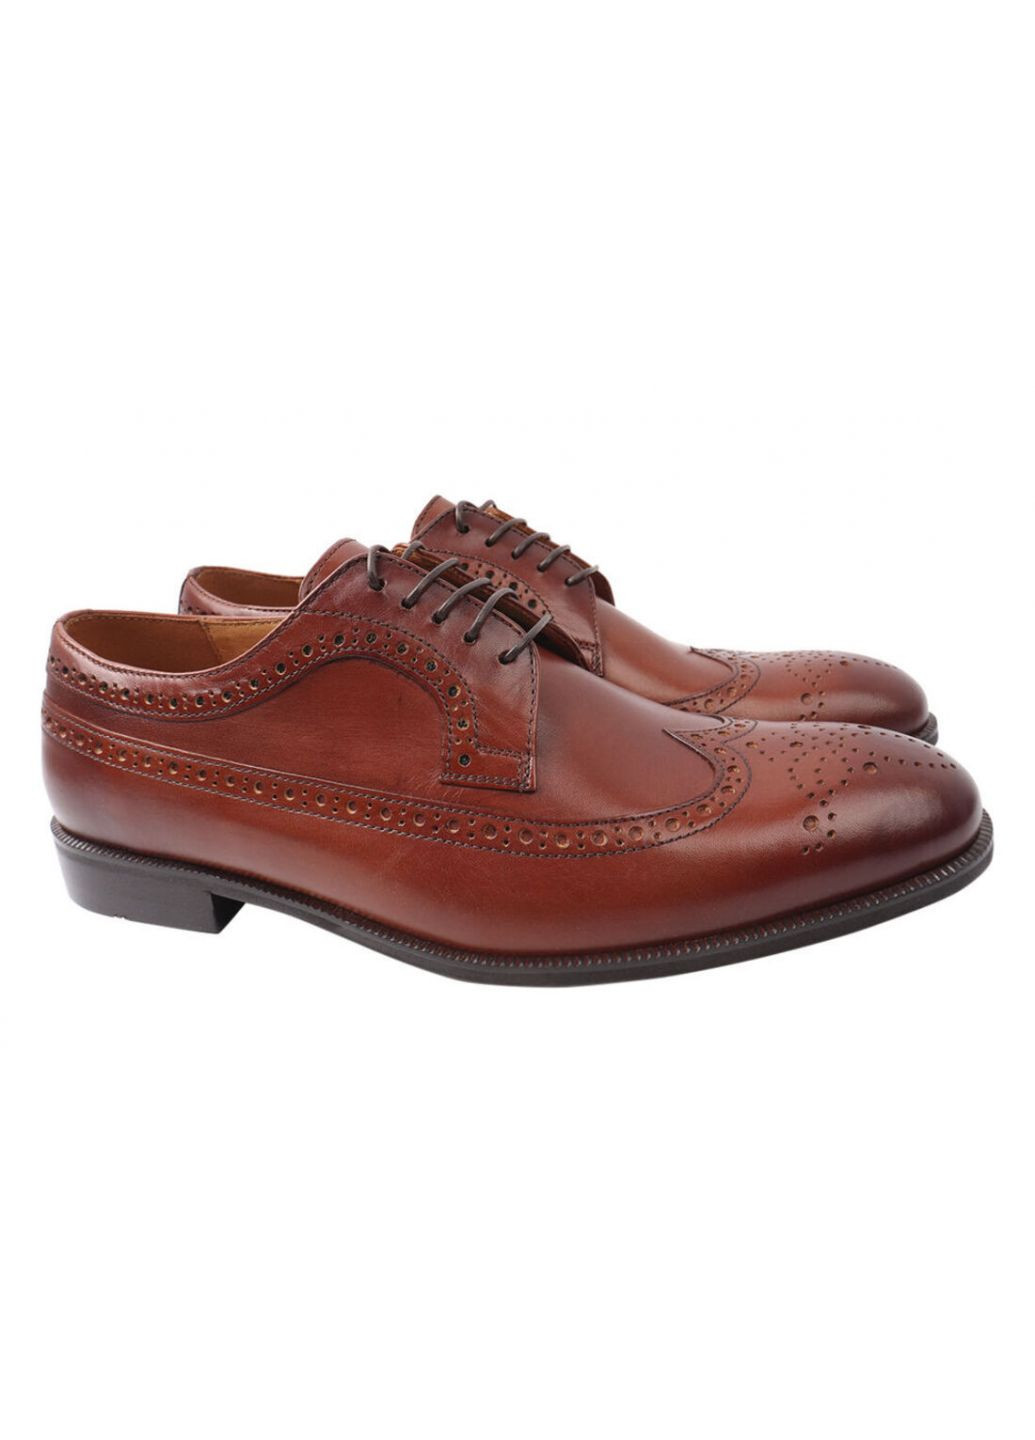 Коричневые туфли мужские из натуральной кожи, на шнуровке, на низком ходу, коричневые, Conhpol